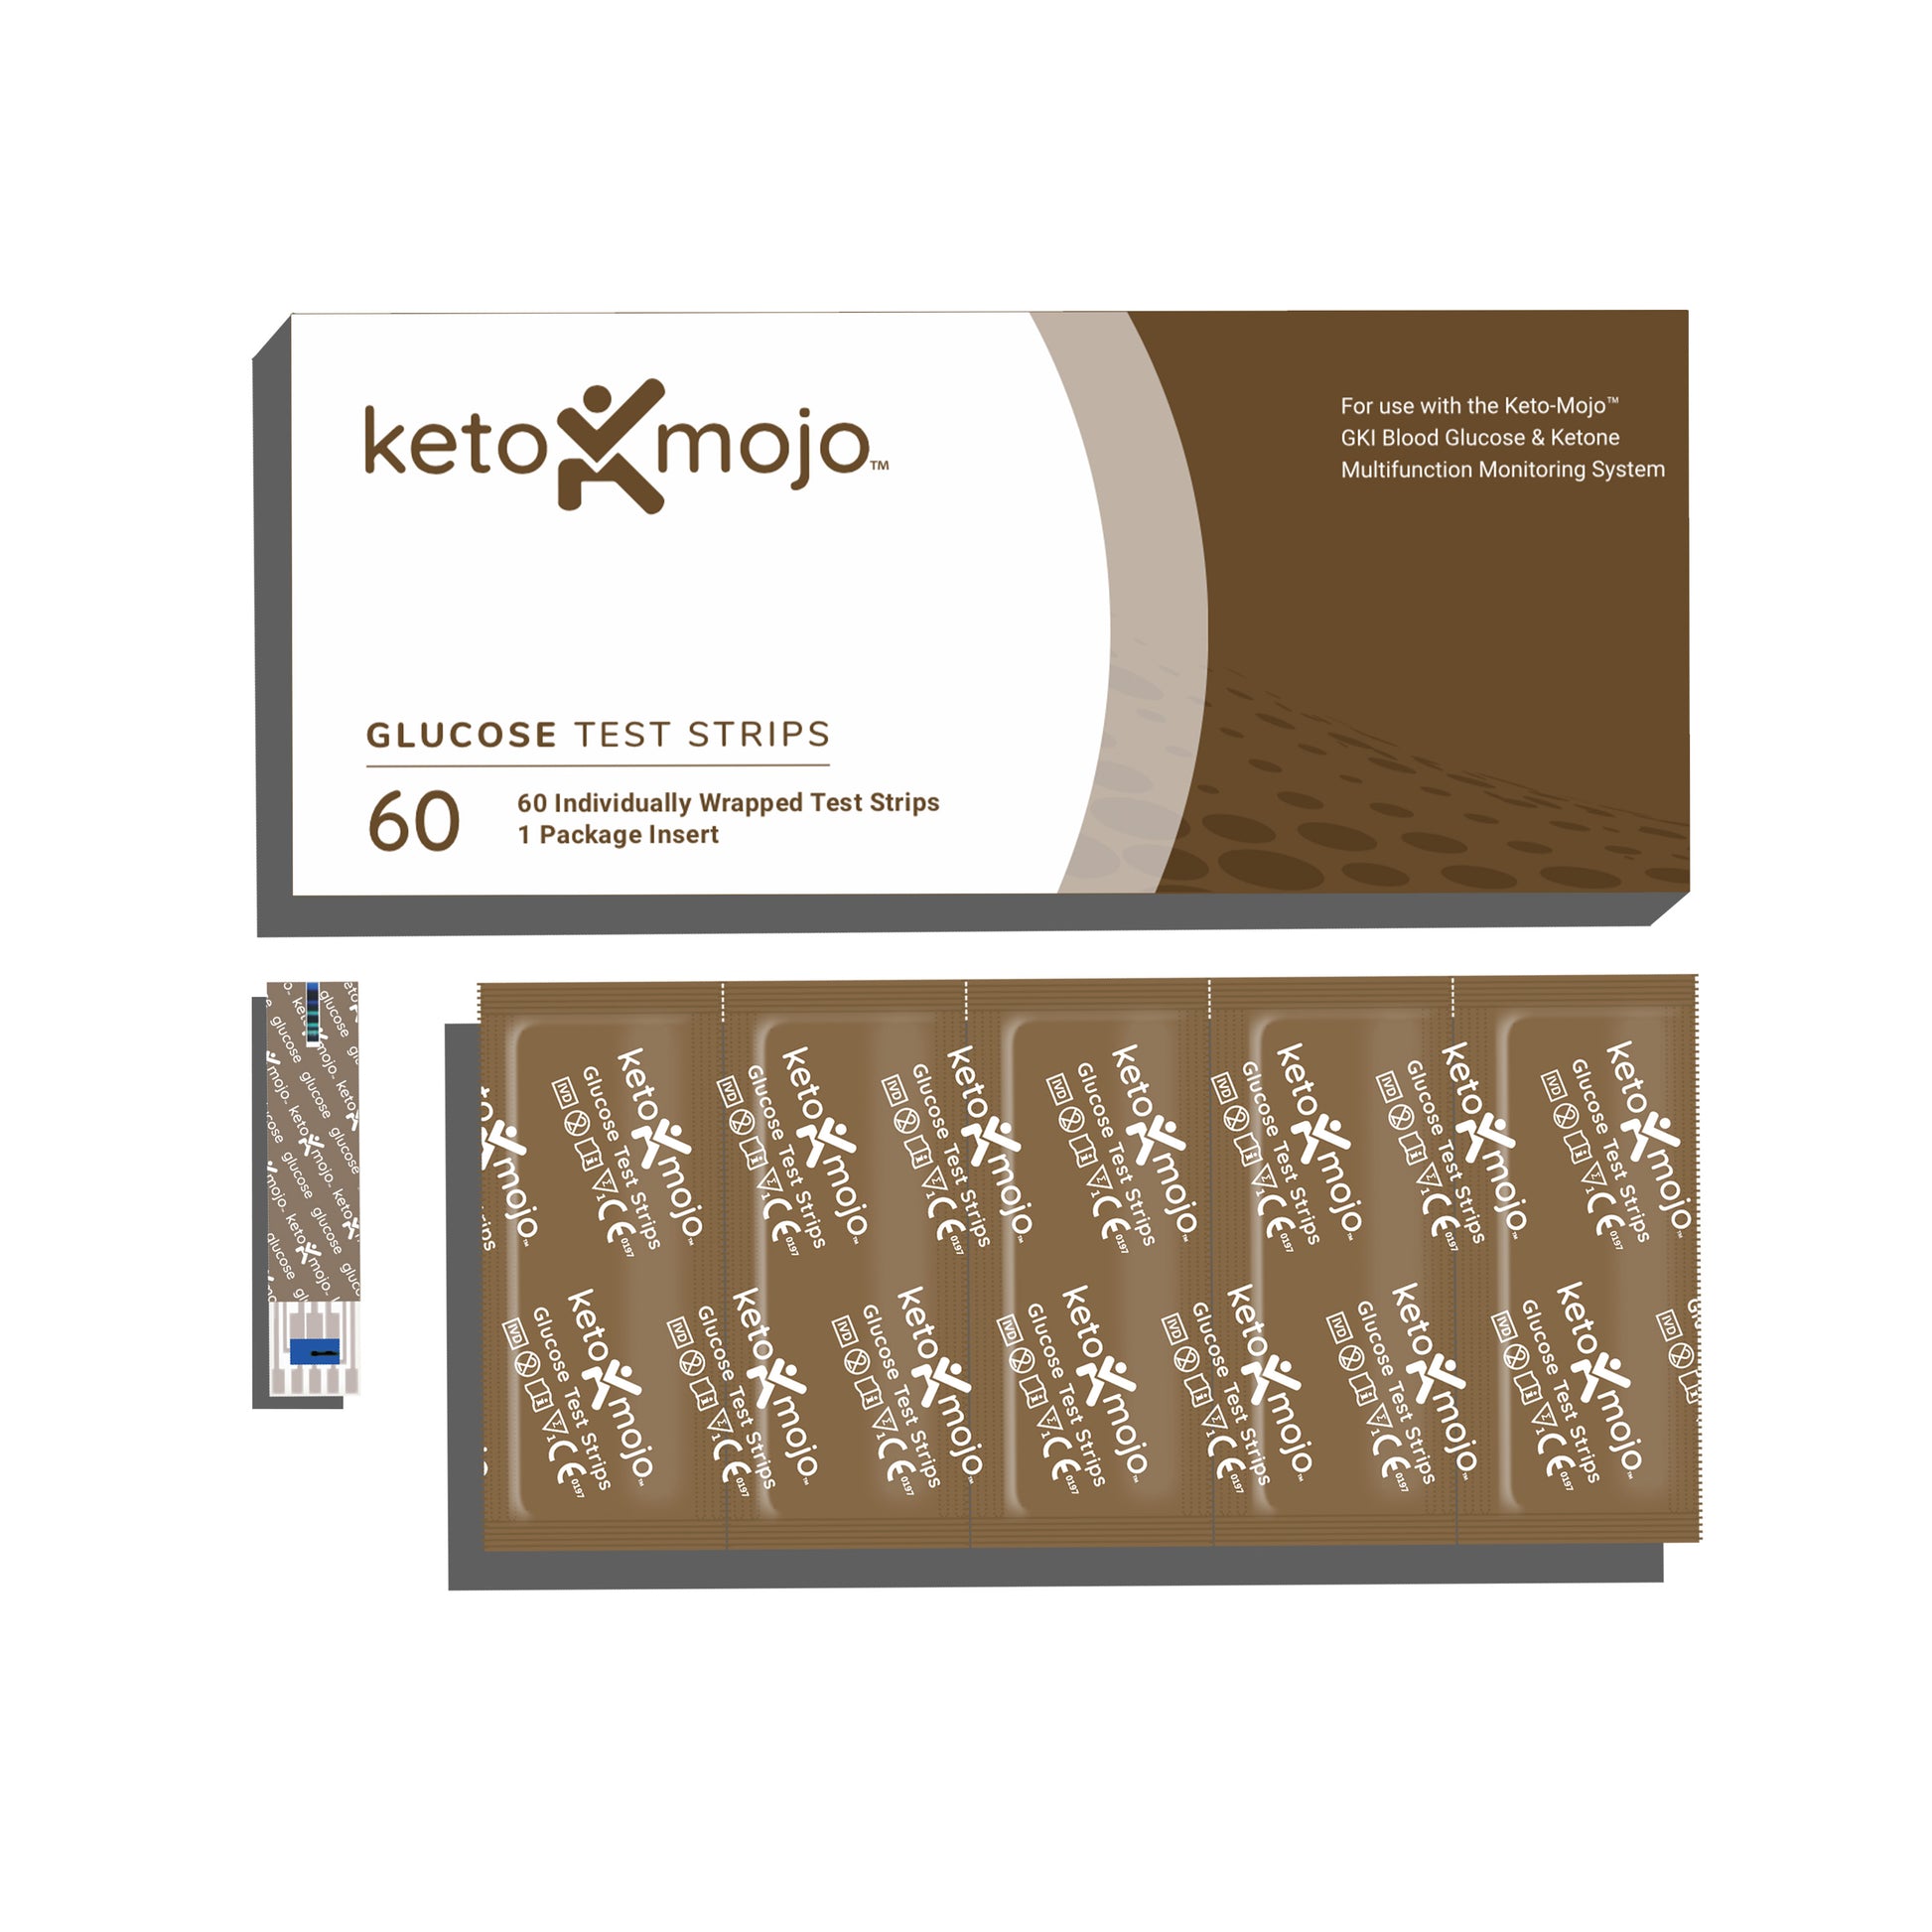 KETO-MOJO GKI-Bluetooth Blood Glucose & Ketone Meter – BASIC